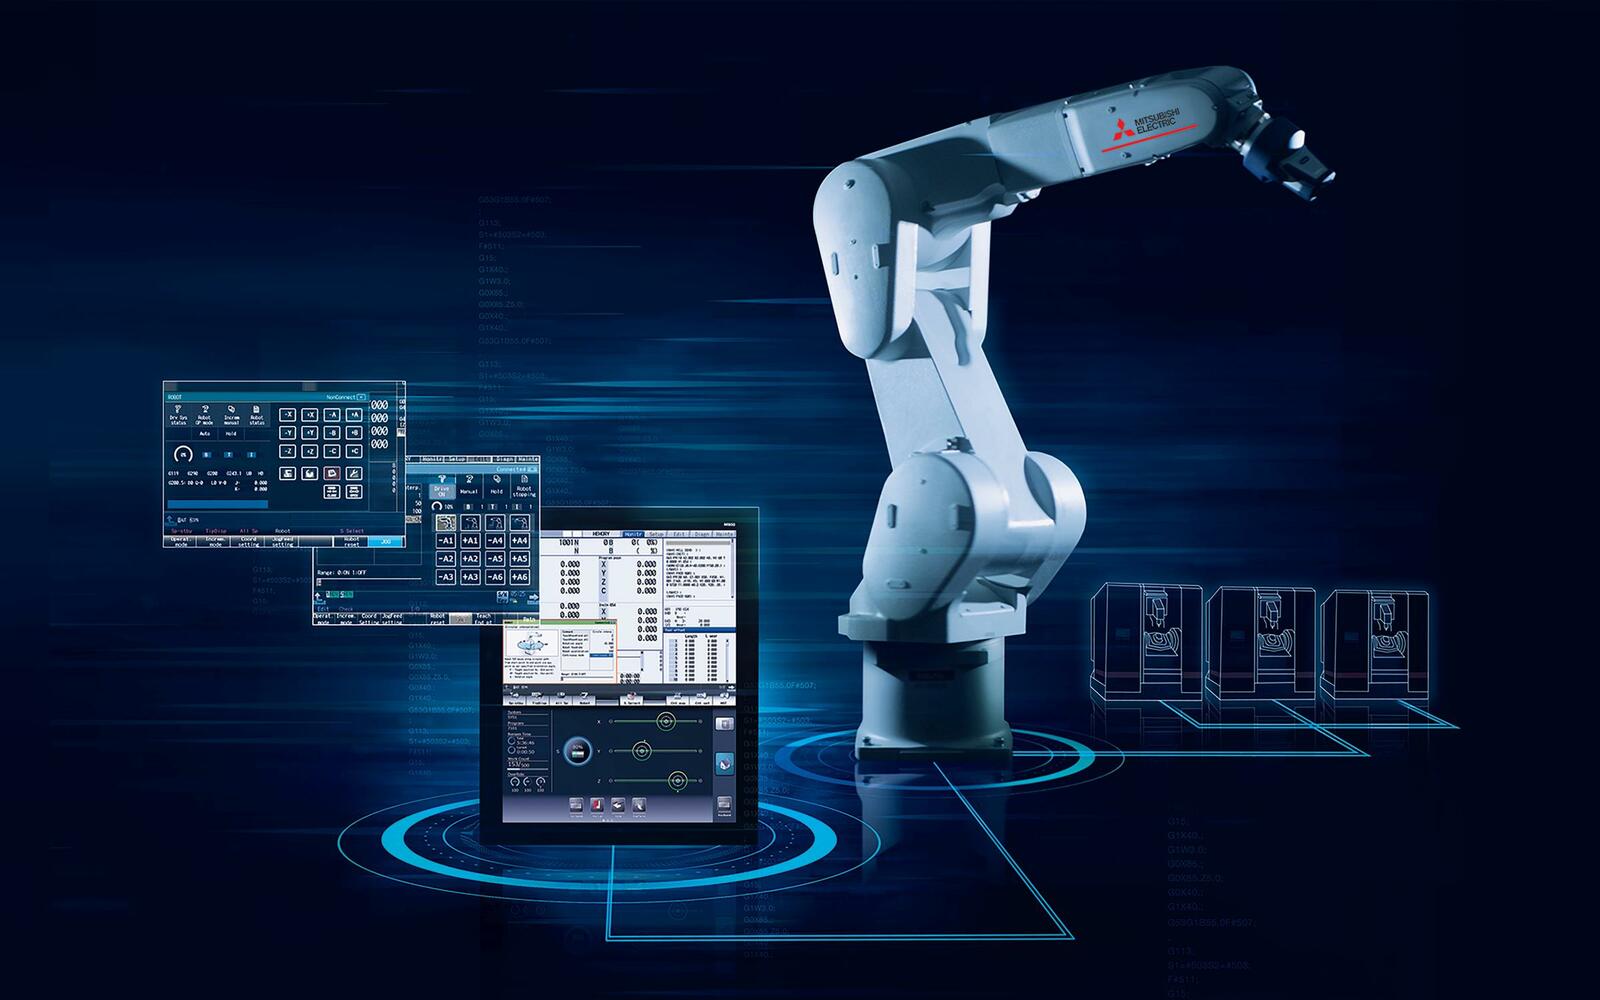 Seit fünf Jahrzehnten werden sowohl in der Robotik als auch im Bereich CNC enorme Fortschritte erzielt. Aber was bringt die Zusammenführung dieser beiden wichtigen Technologien? 